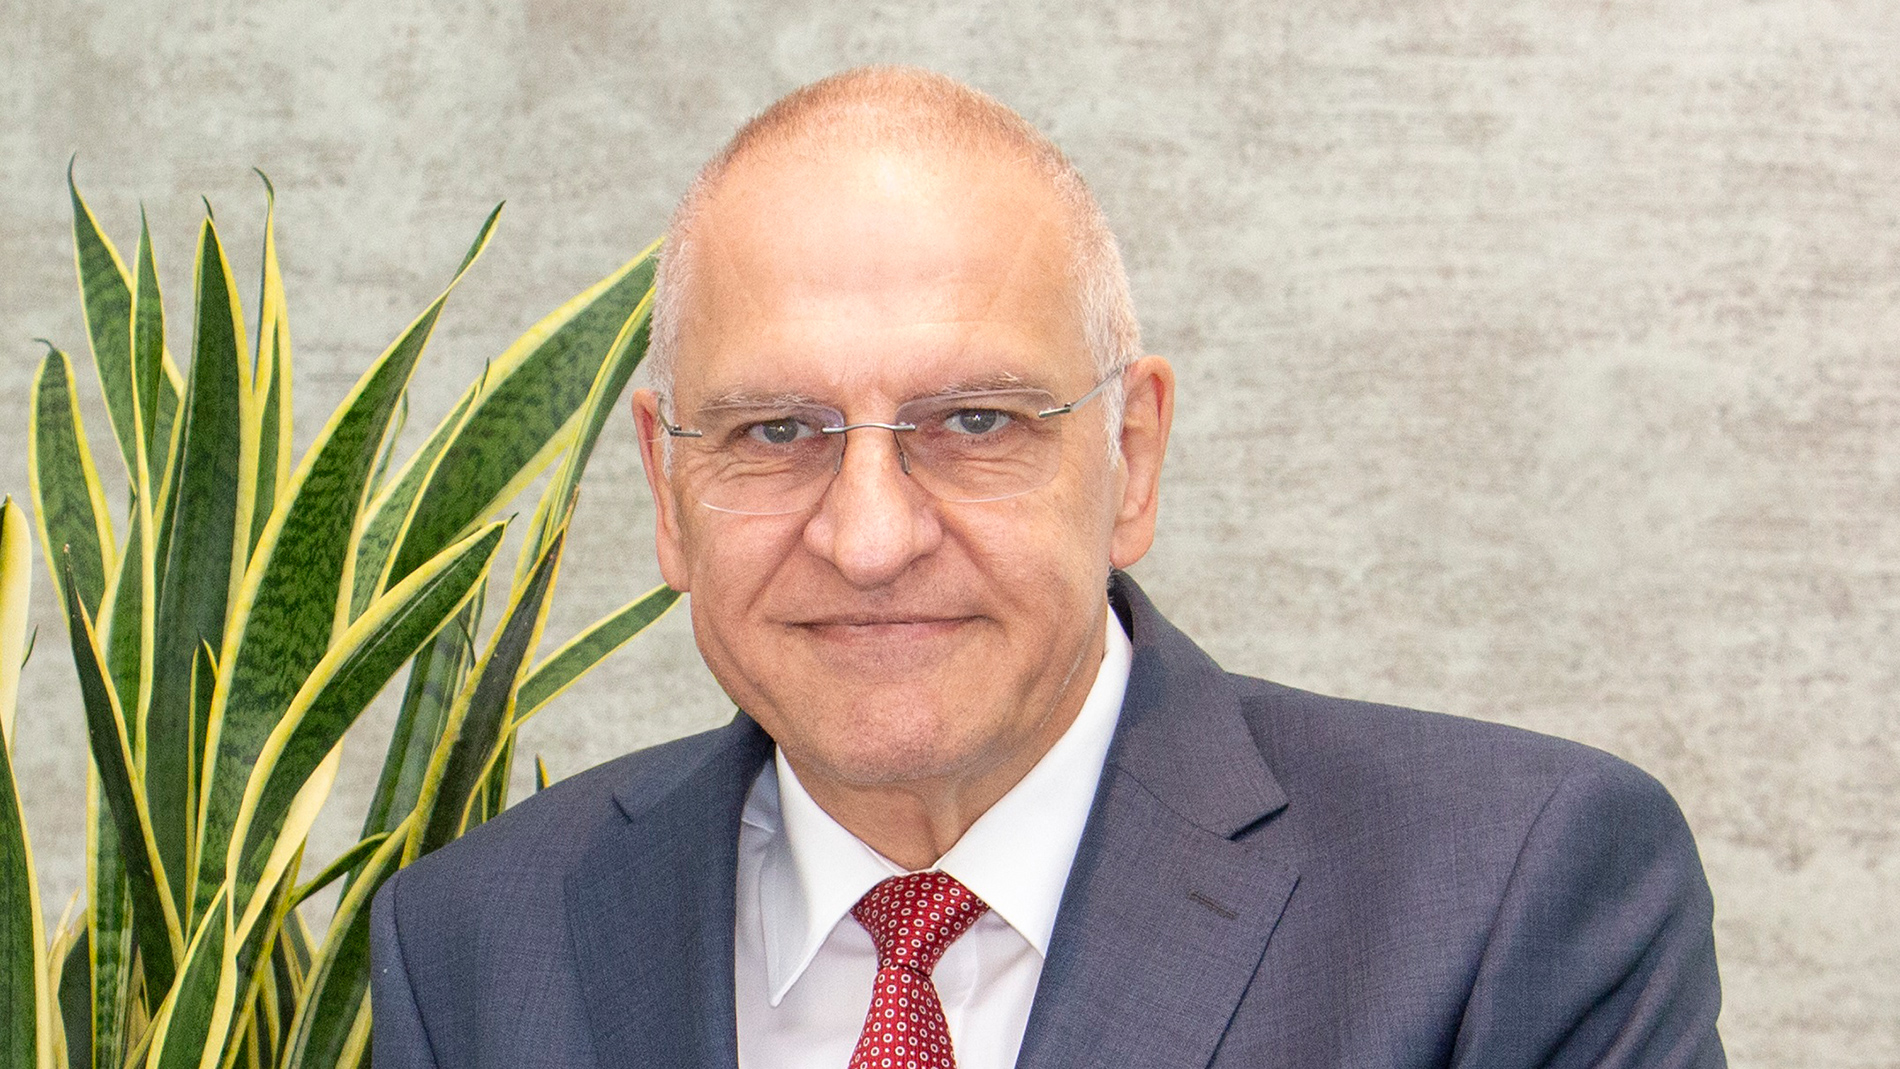 Dr Günter Stoll, CEO, Grünbeck